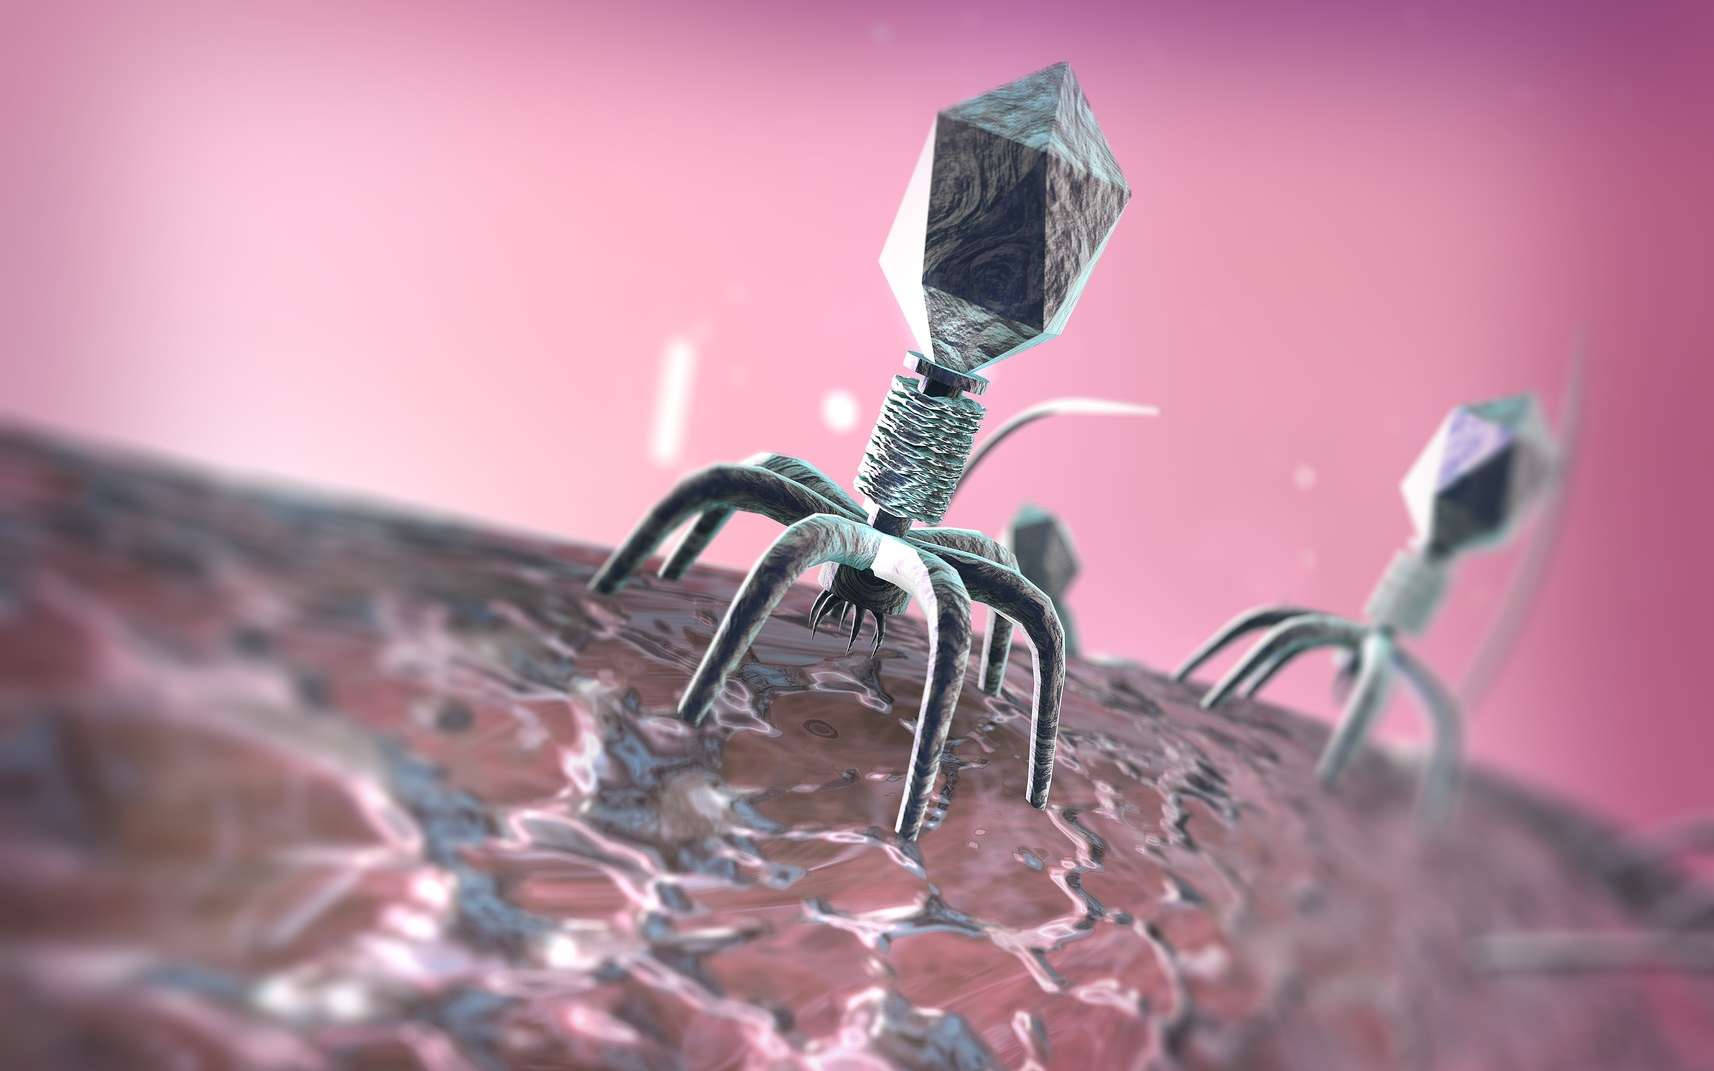 Le phage infecte sa bactérie cible et la tue. © evve79, Fotolia